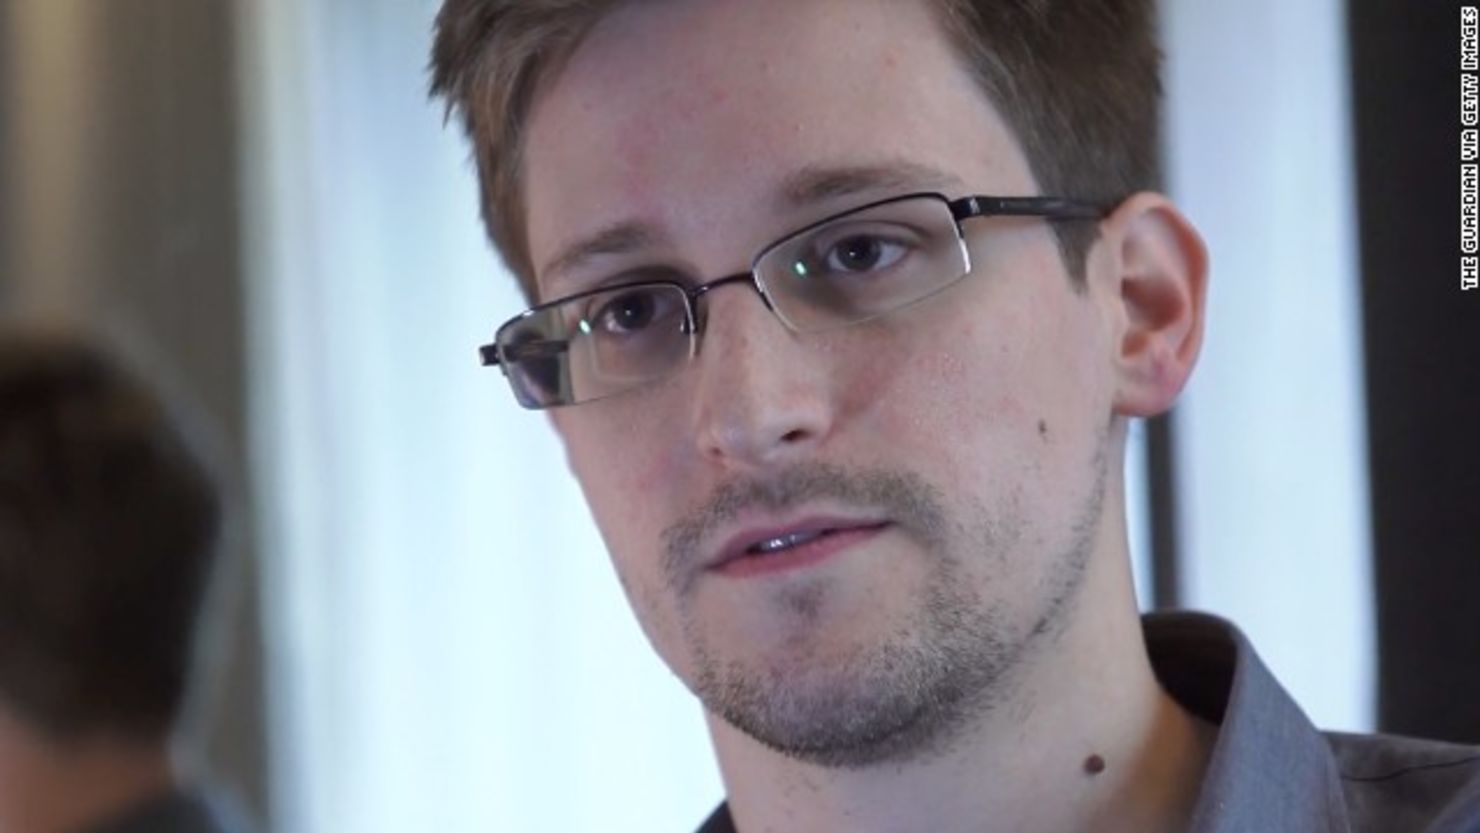 Las revelaciones de Edward Snowden sobre las actividades de la Agencia de Seguridad Nacional generaron conmoción a nivel mundial.